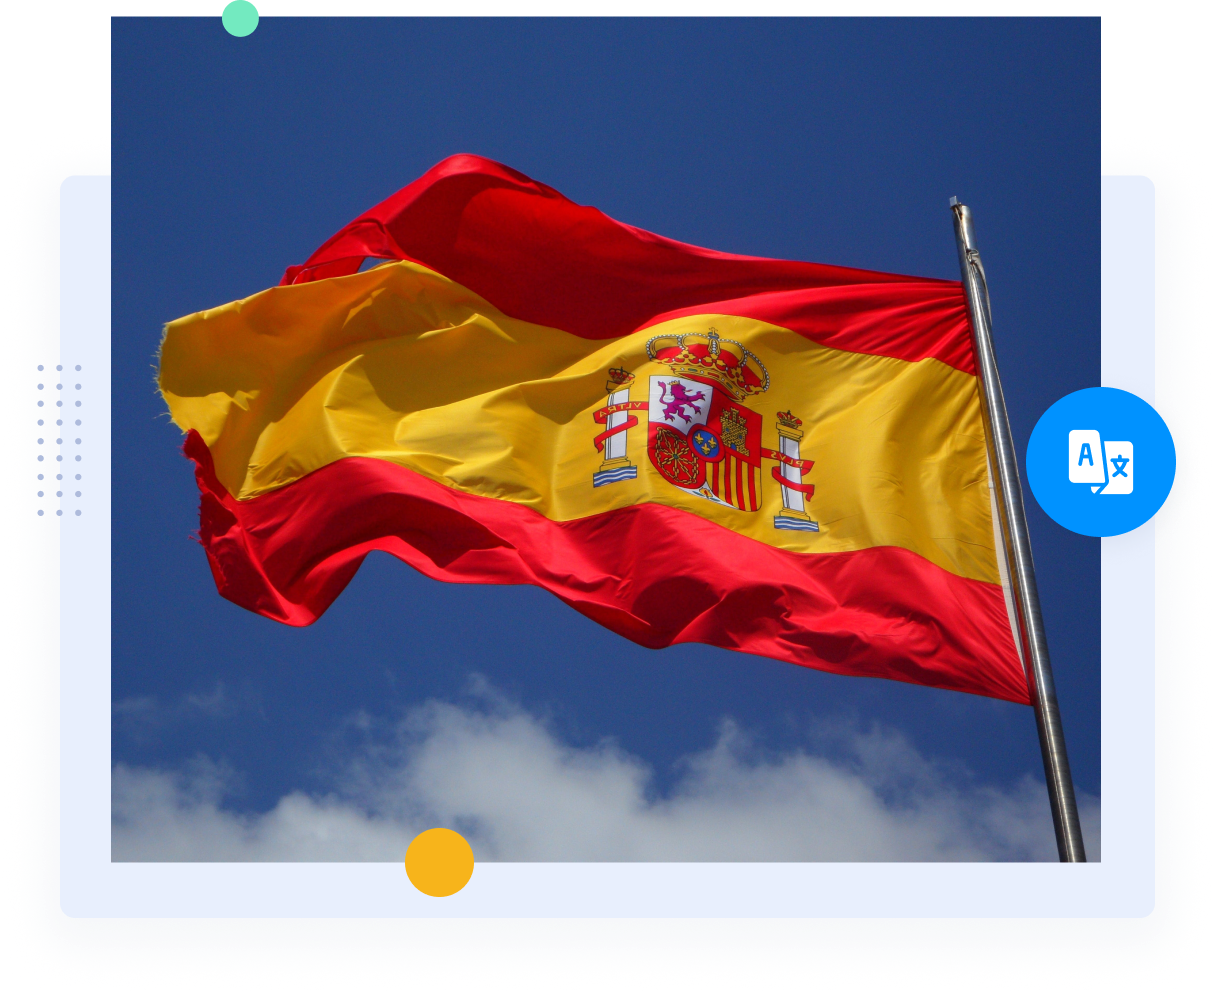 Le drapeau rouge et jaune de l'Espagne représente les traducteurs professionnels espagnols et les services de traduction.